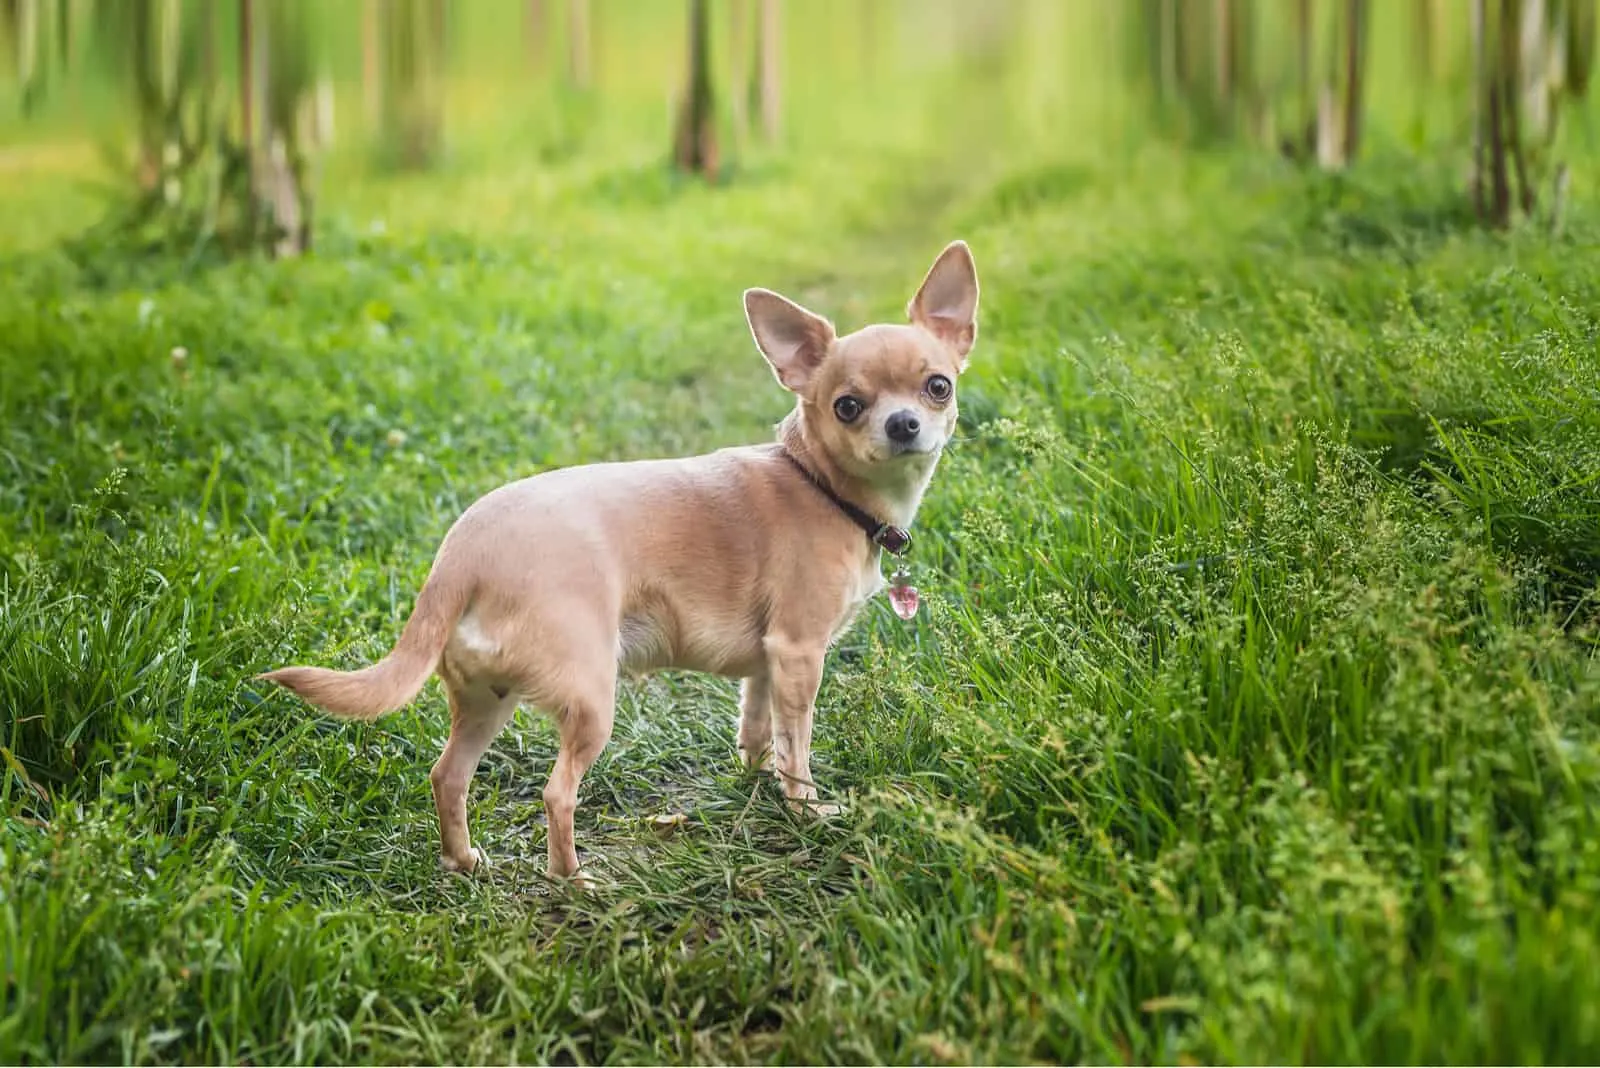 Chihuahua walking in garden